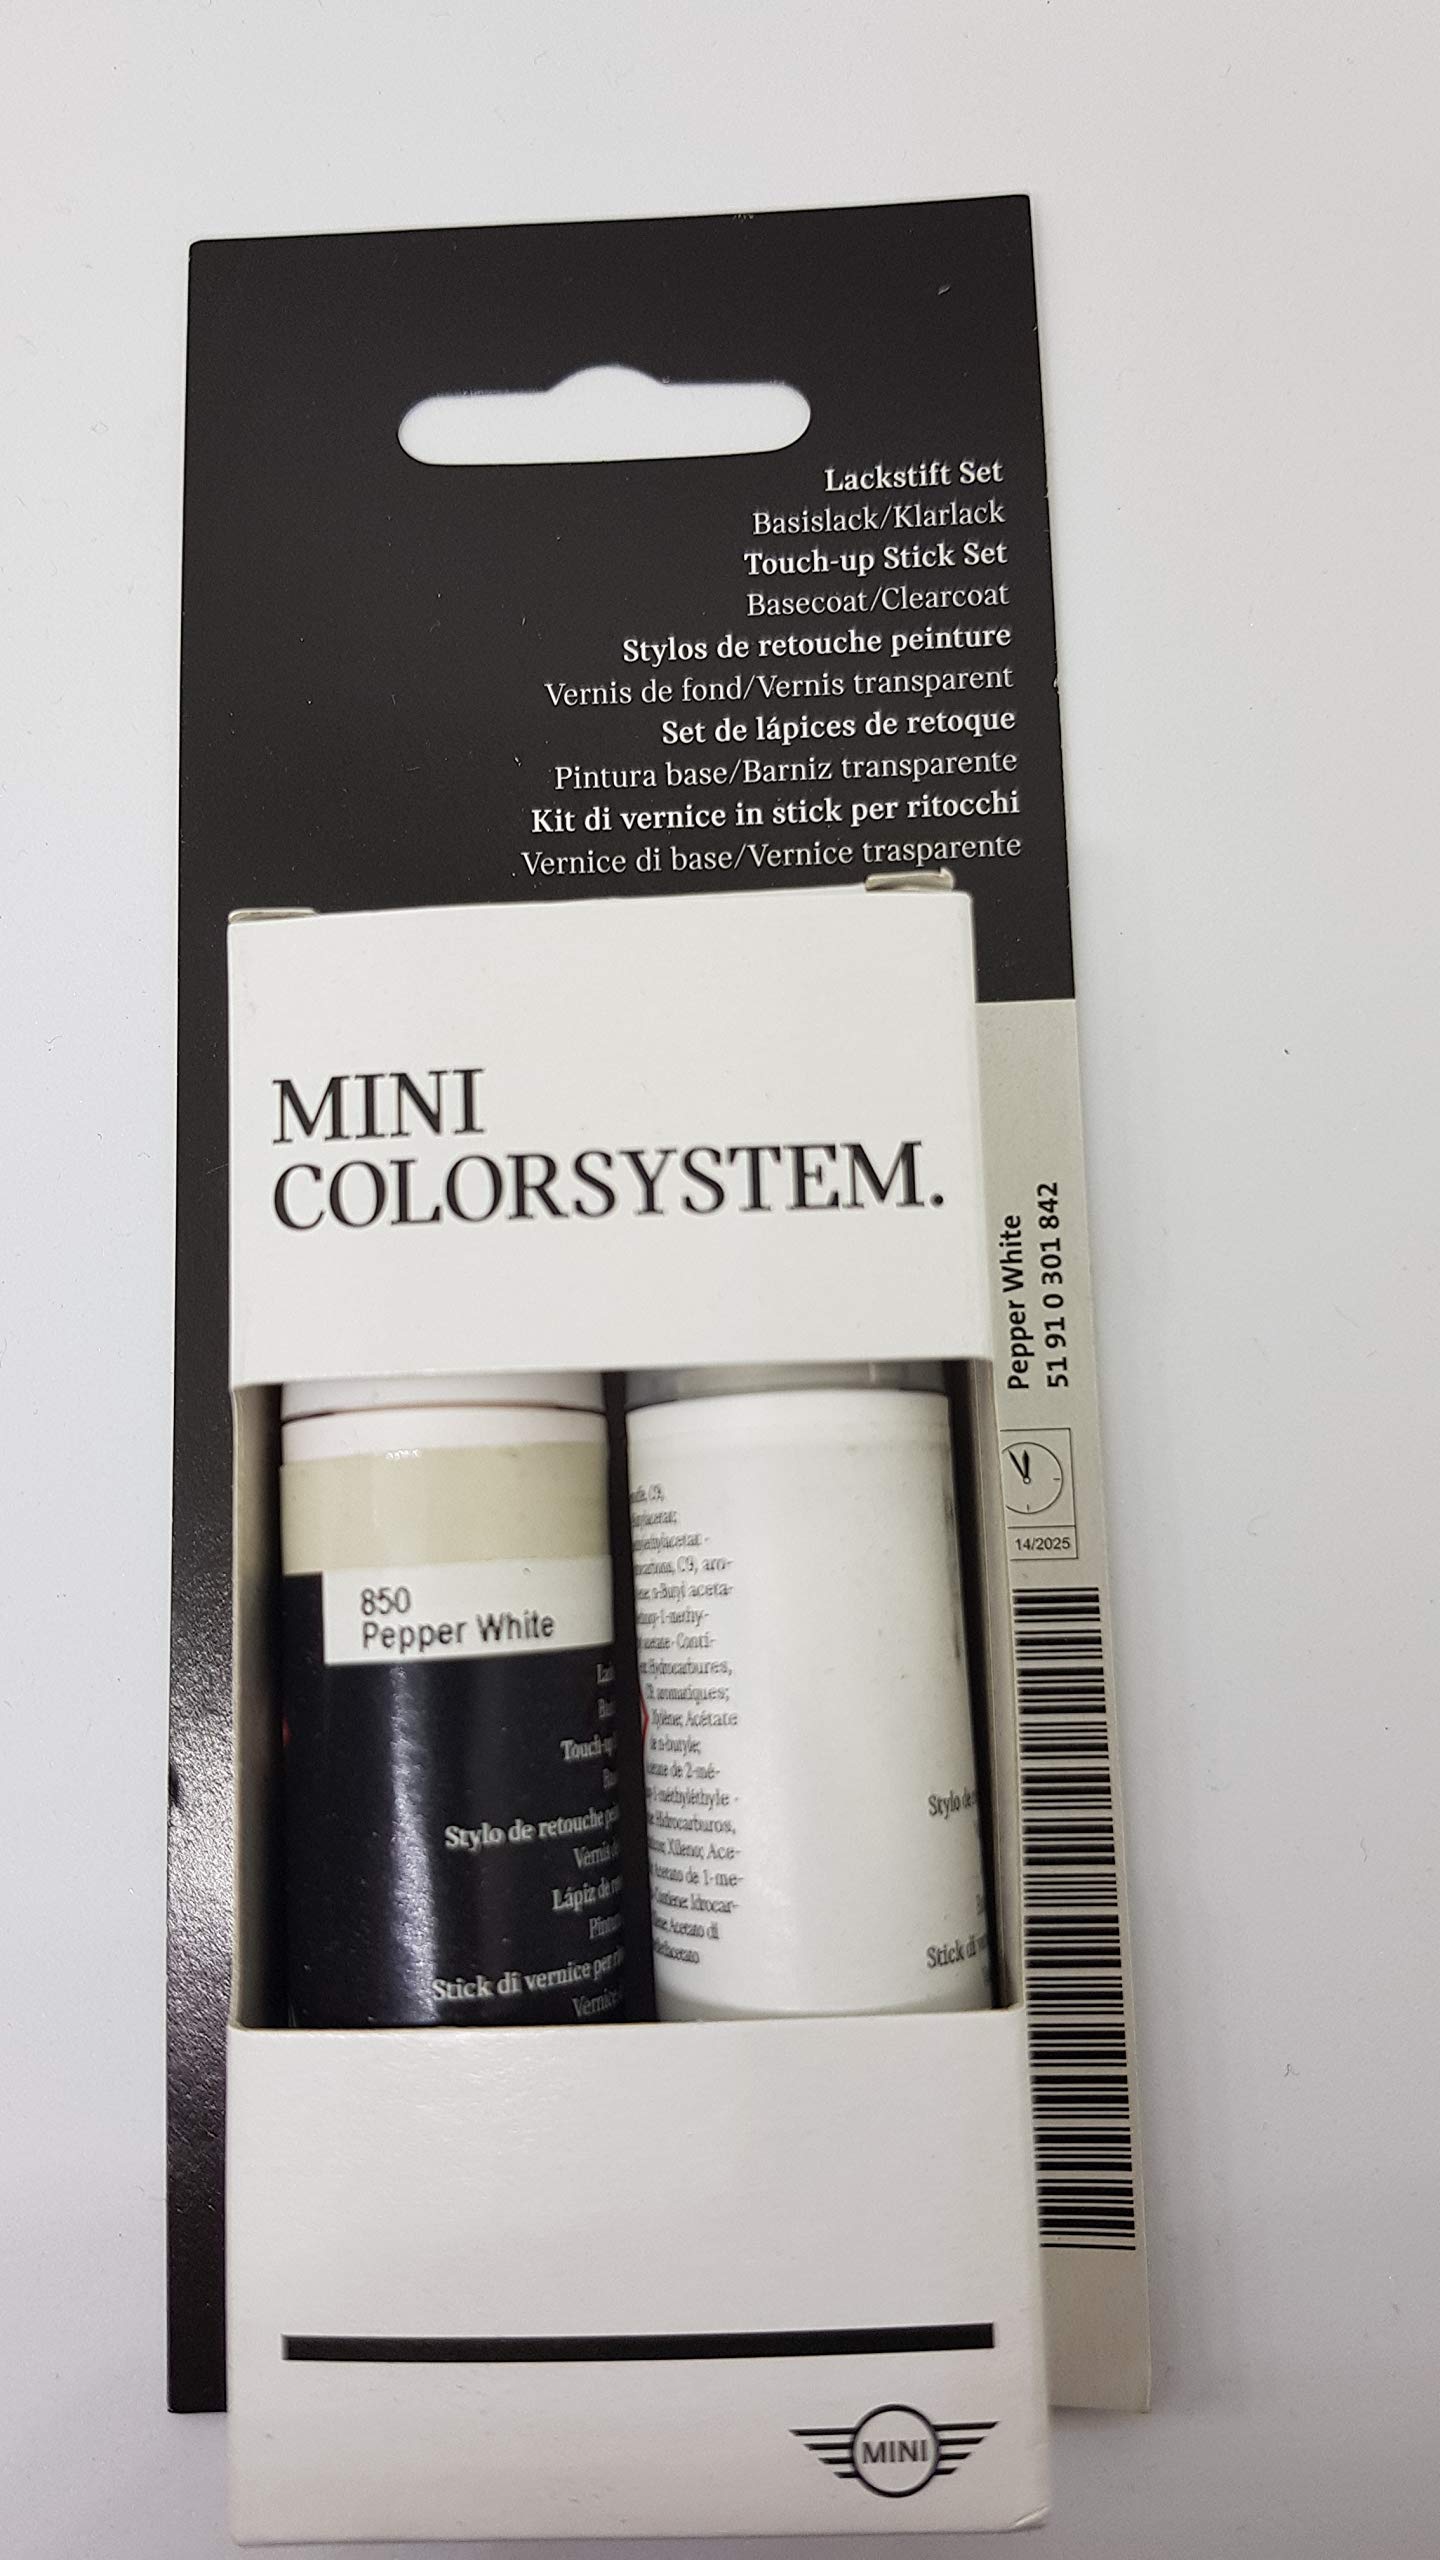 Mini Original-Lackstift-Set, 2 x 12 ml Pfeffer-weiß, Code 850 51910301842 von MINI